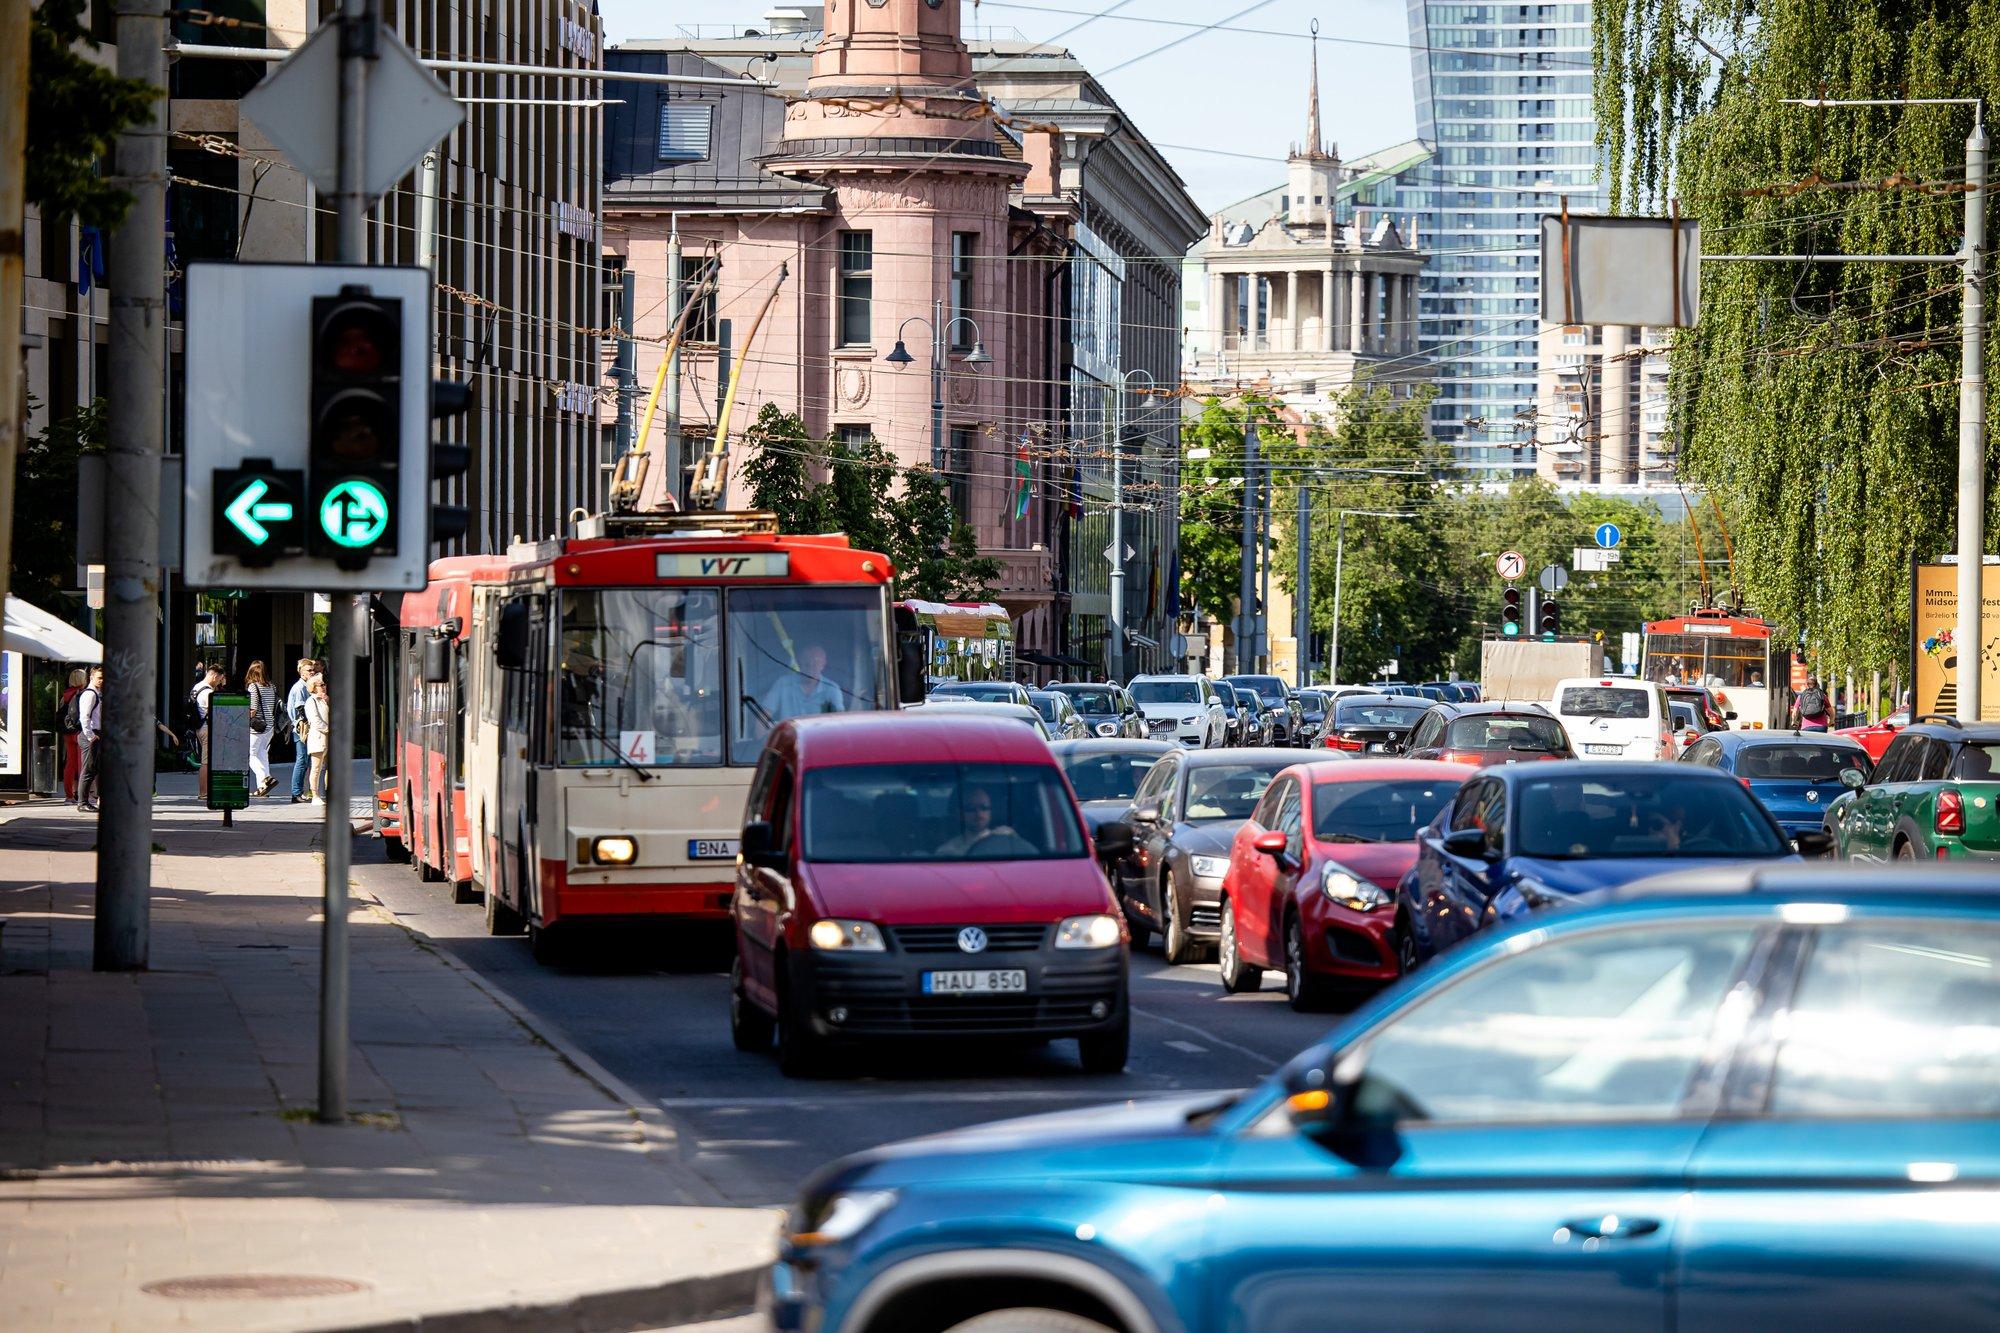 Во время саммита в Вильнюсе будет курсировать меньше транспорта, изменится расписание